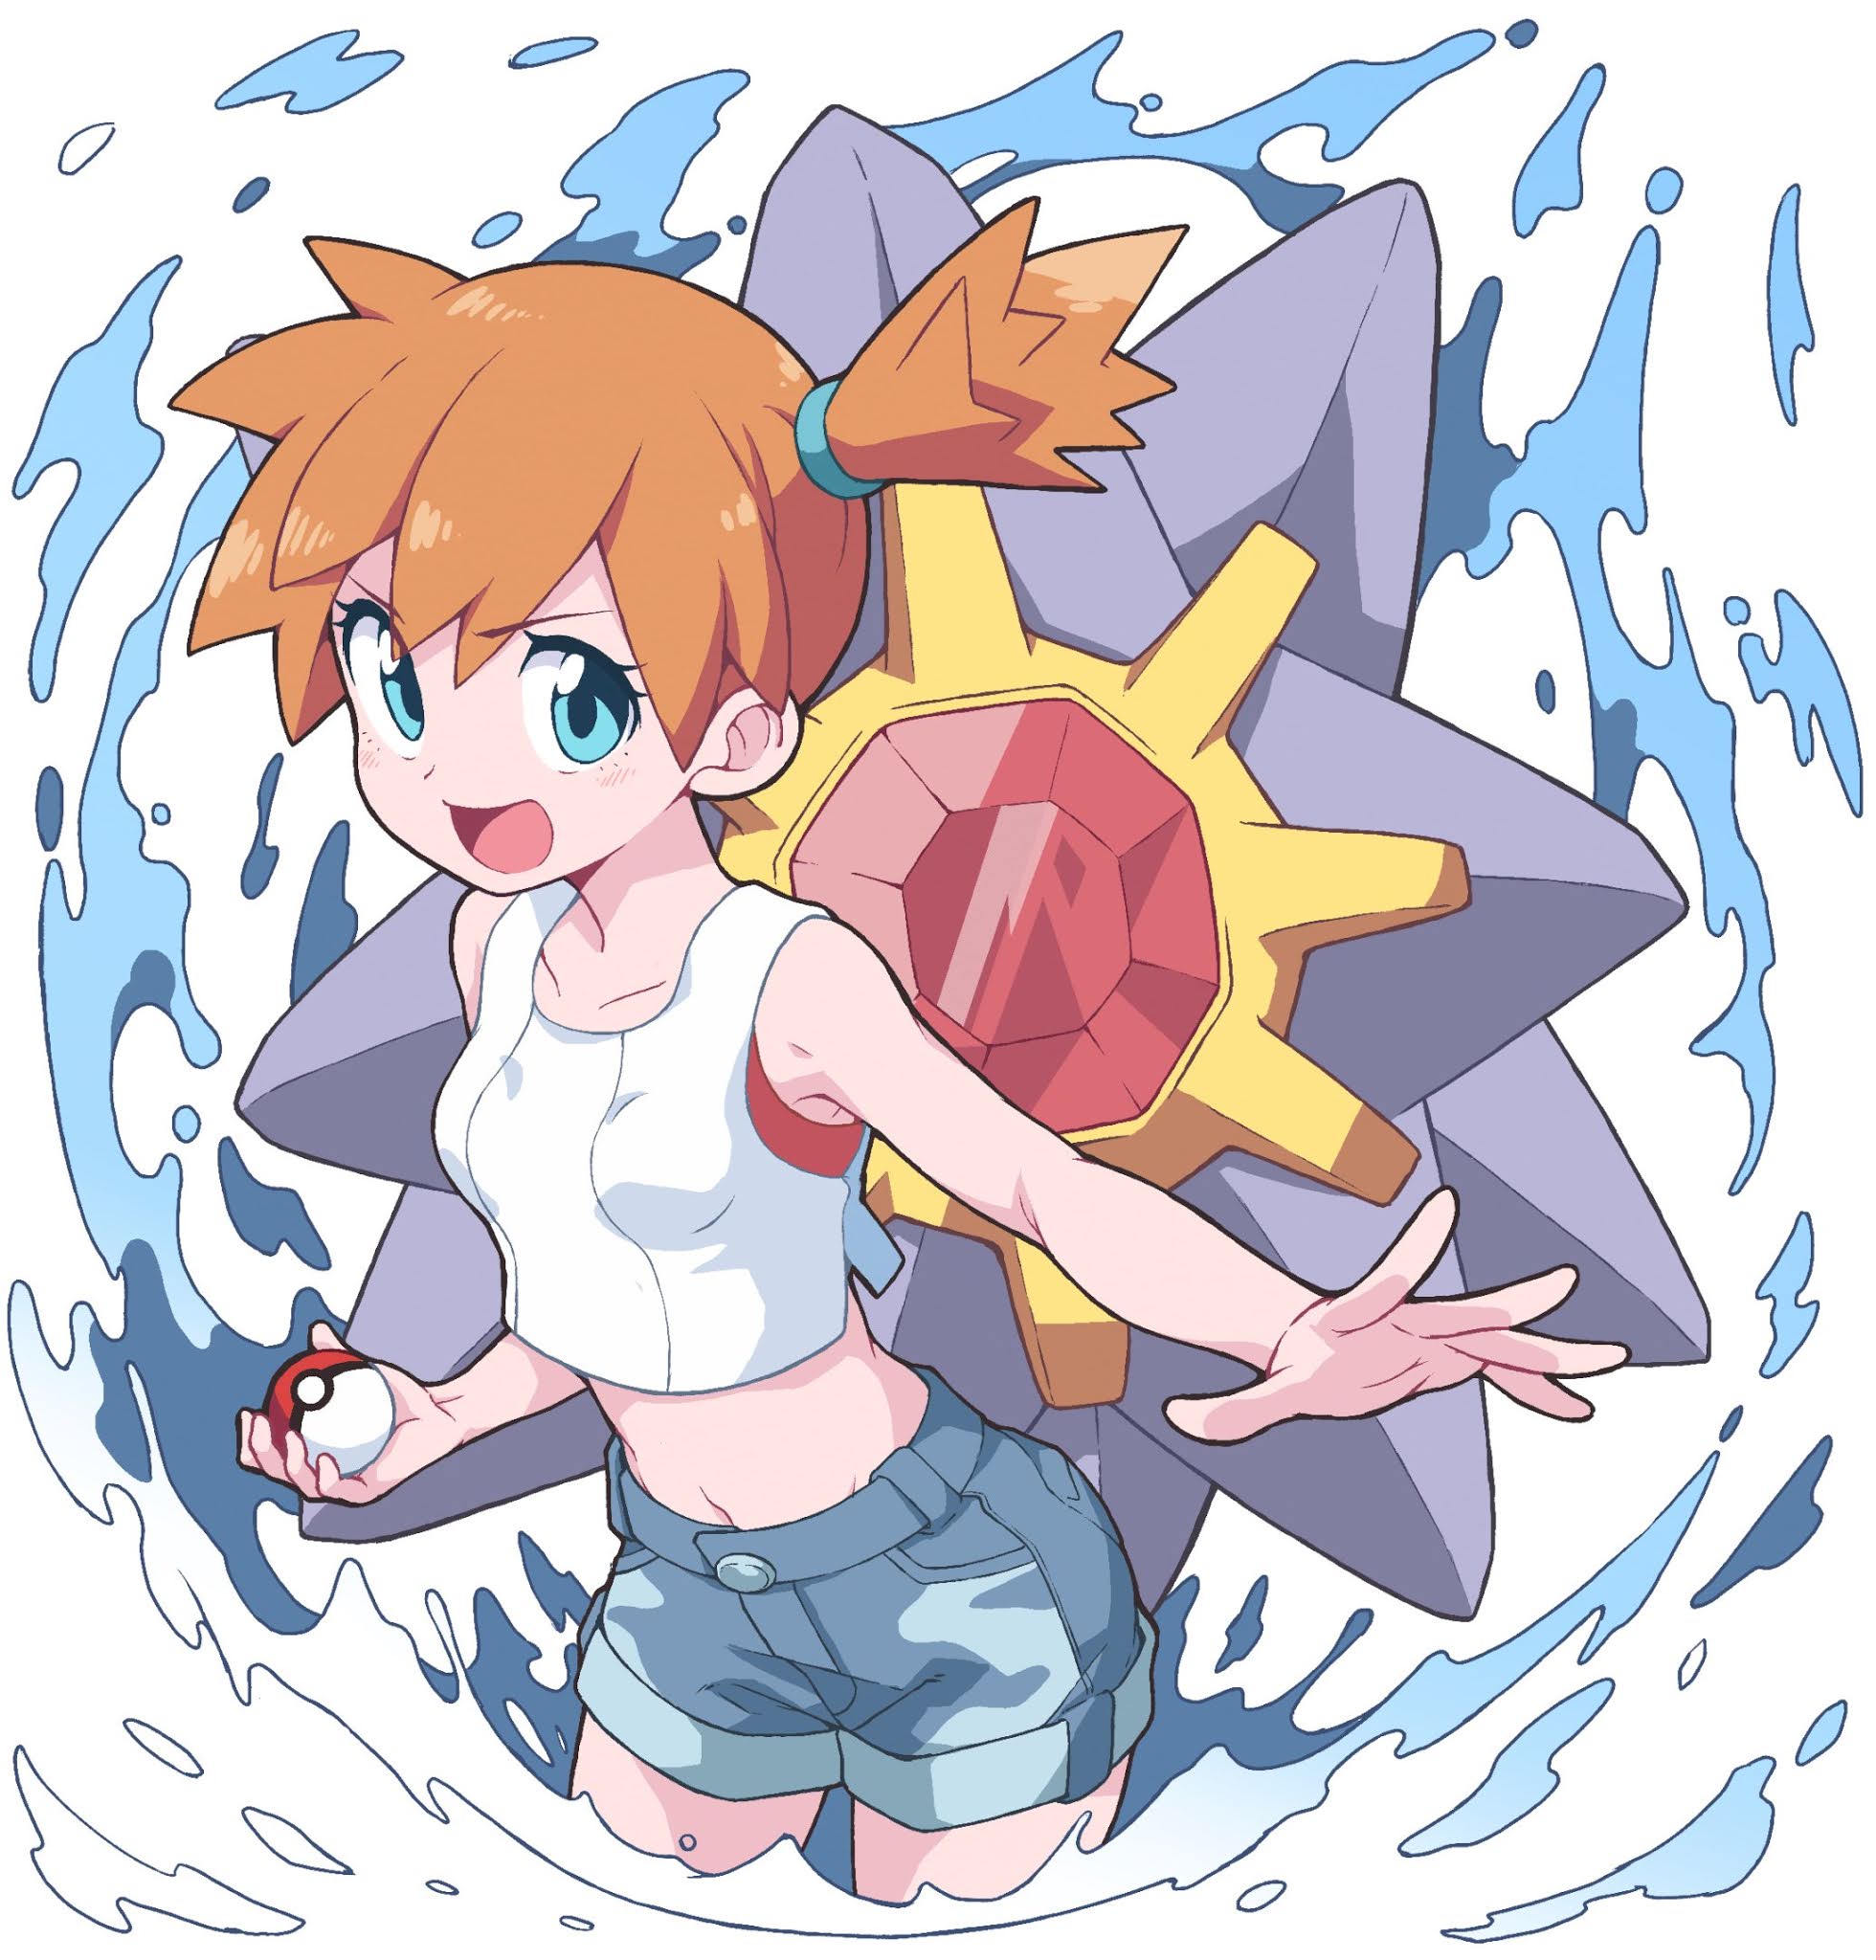 Otaku Cabeludo: As companheiras femininas favoritas dos fãs de Pokémon